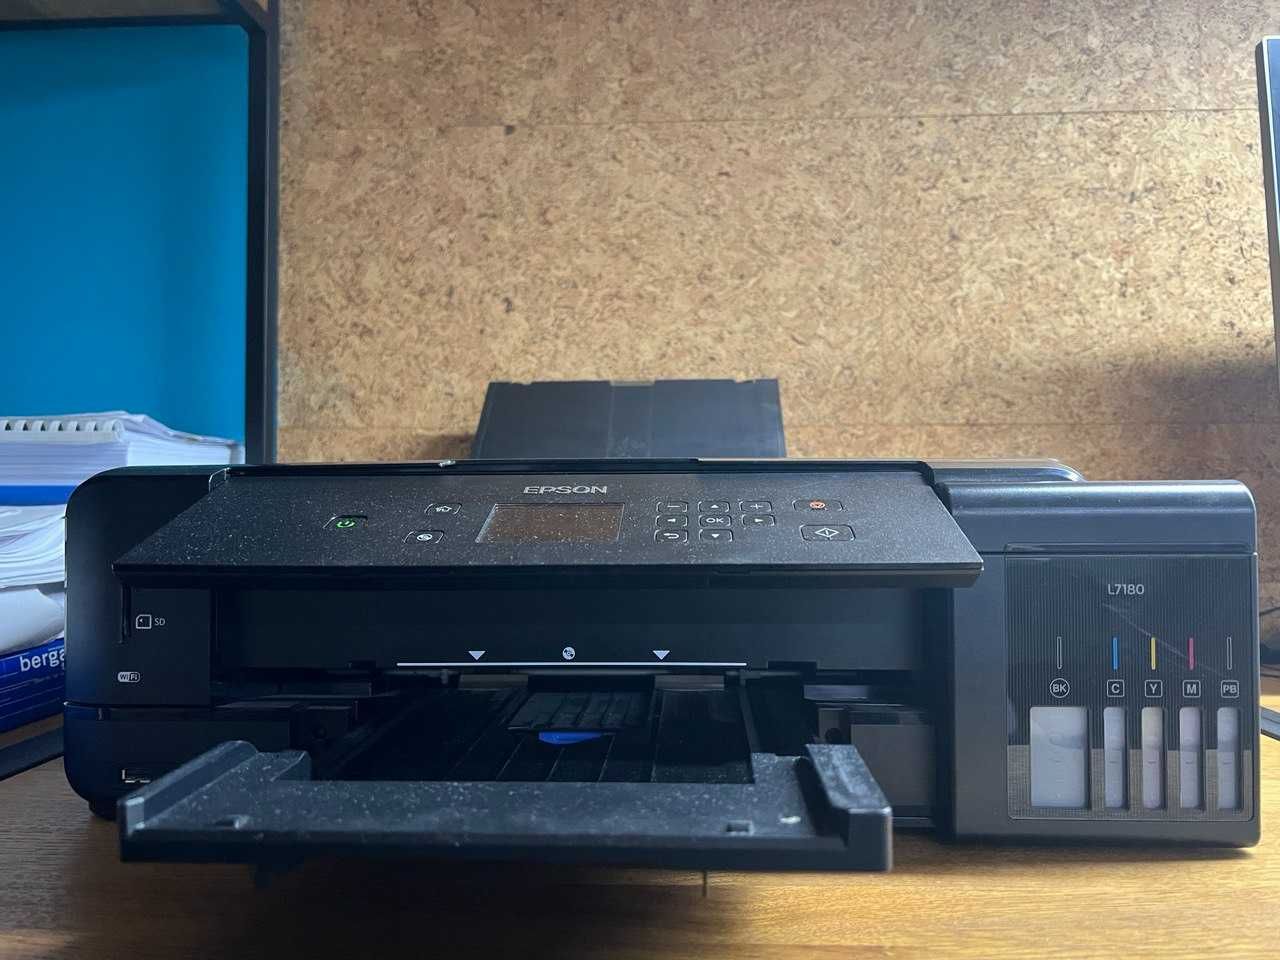 МФУ Принтер копир сканнер Epson L7180+сканер мышь в подарок